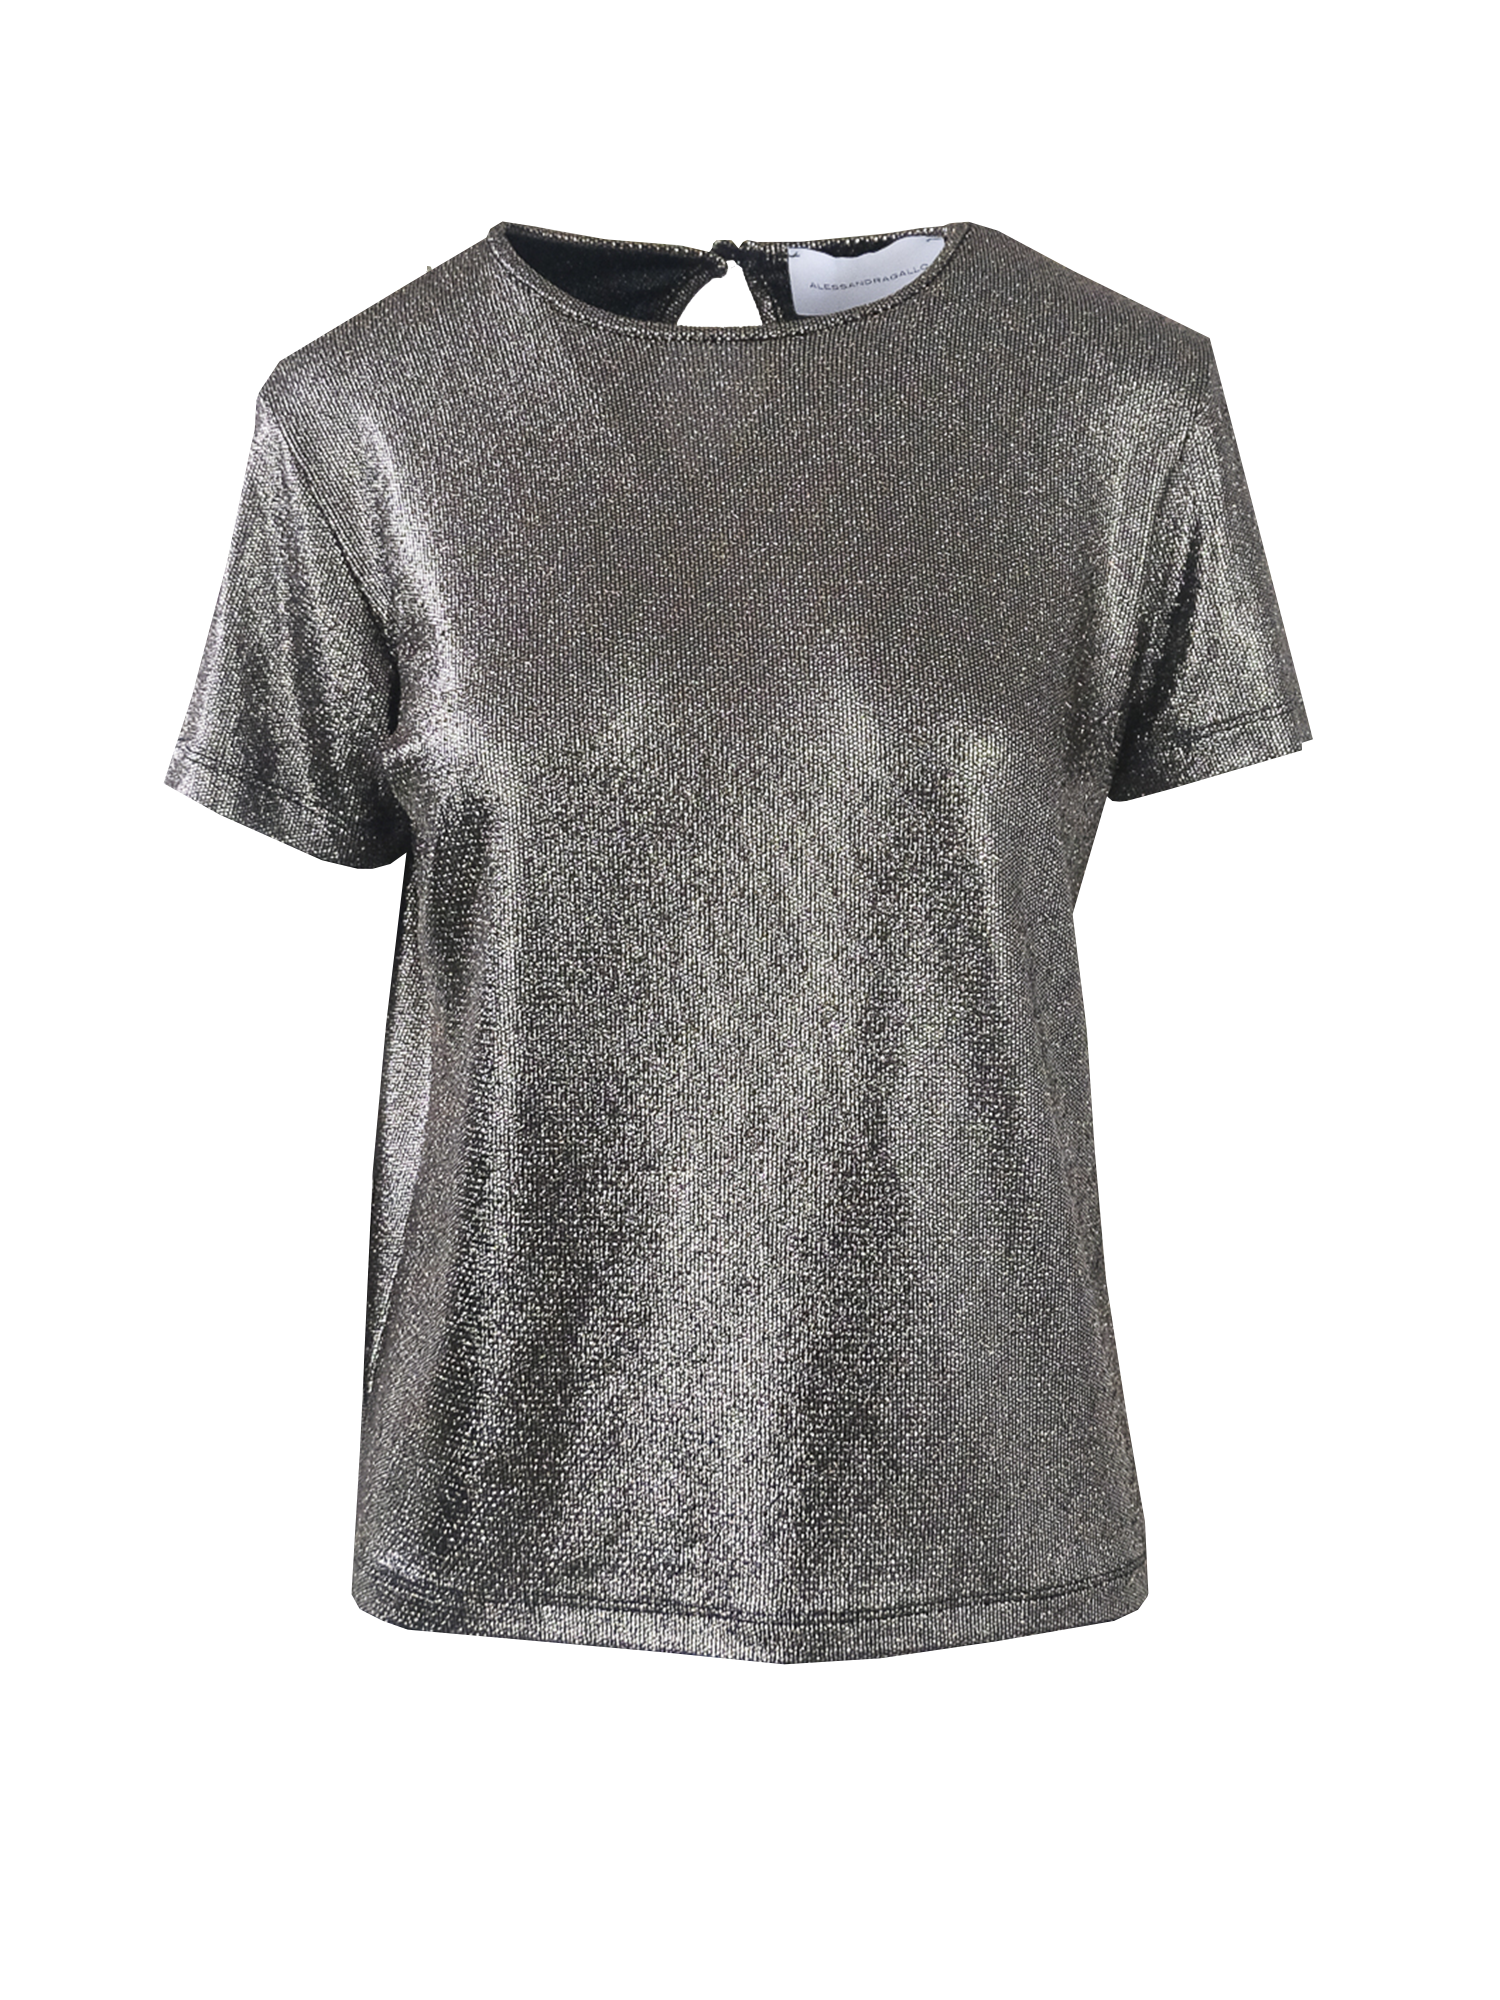 CARMEN - T-shirt in charcoal grey lurex